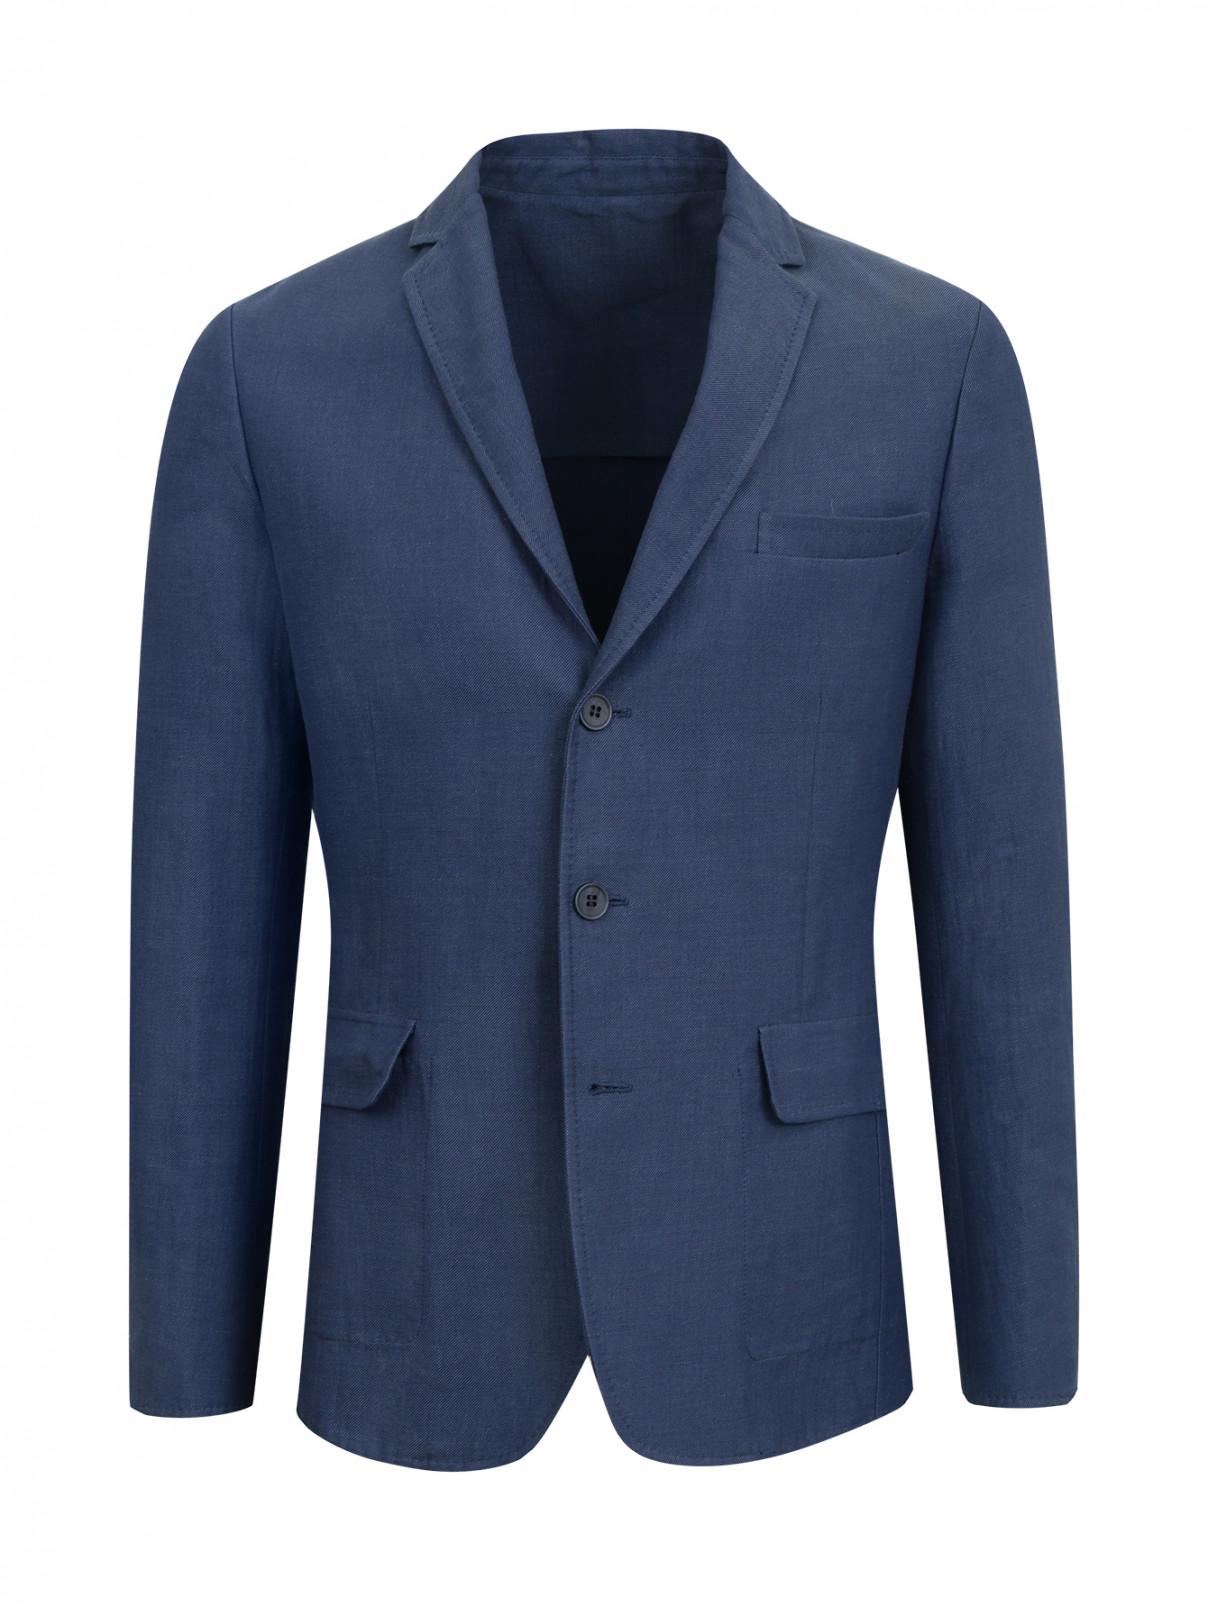 Пиджак из хлопка и льна Ermanno Scervino  –  Общий вид  – Цвет:  Синий